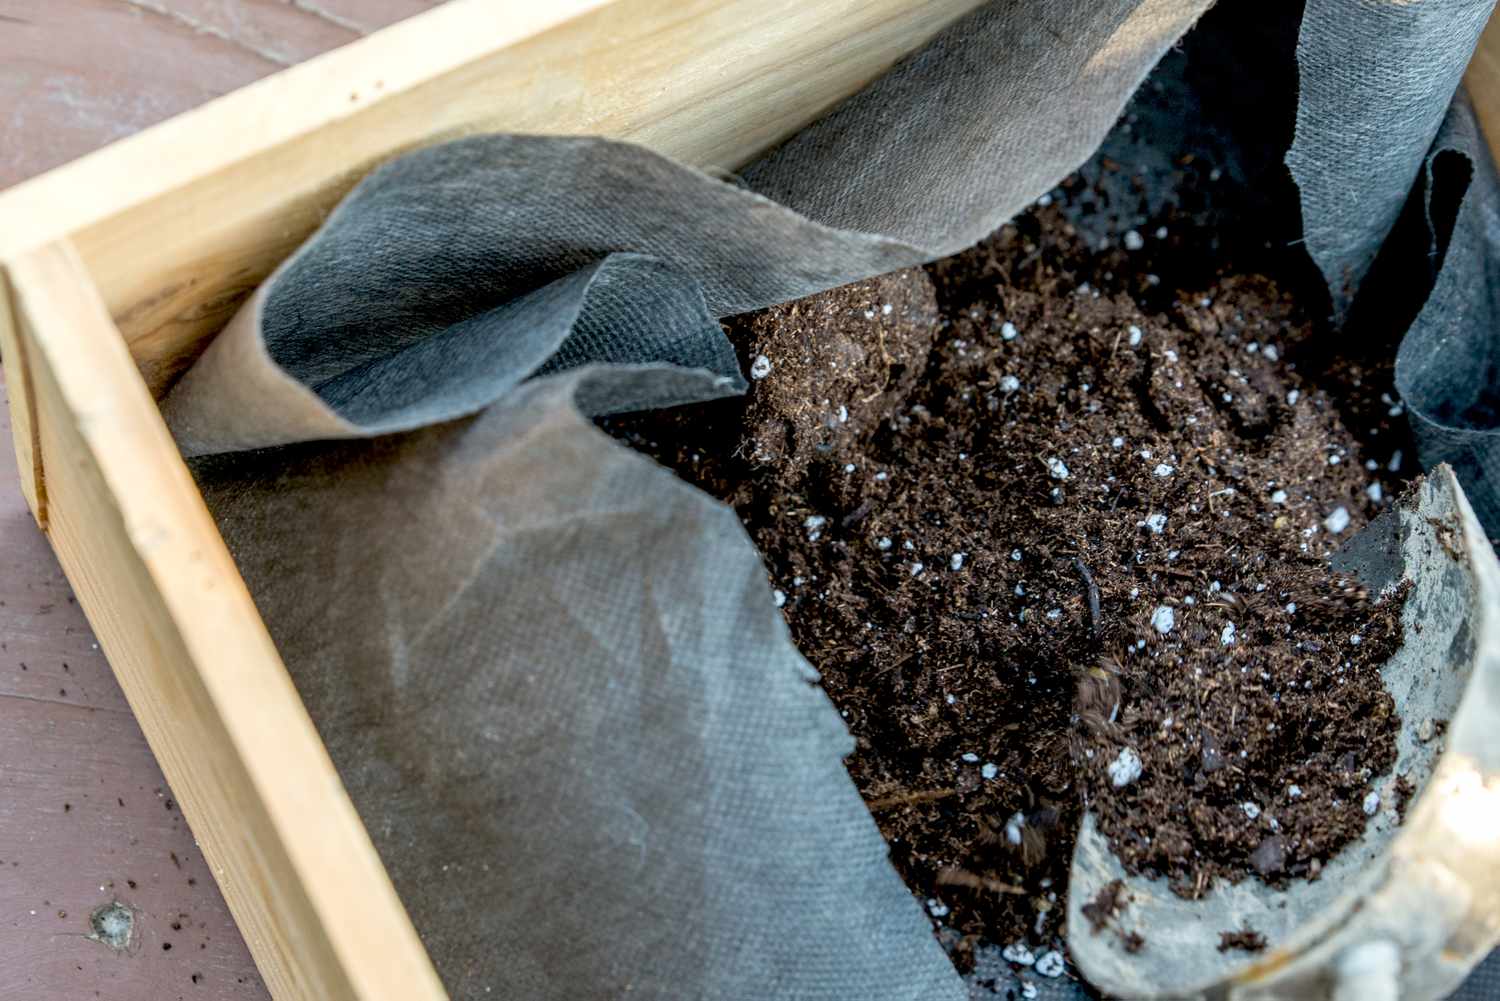 Adding soil to the planter box